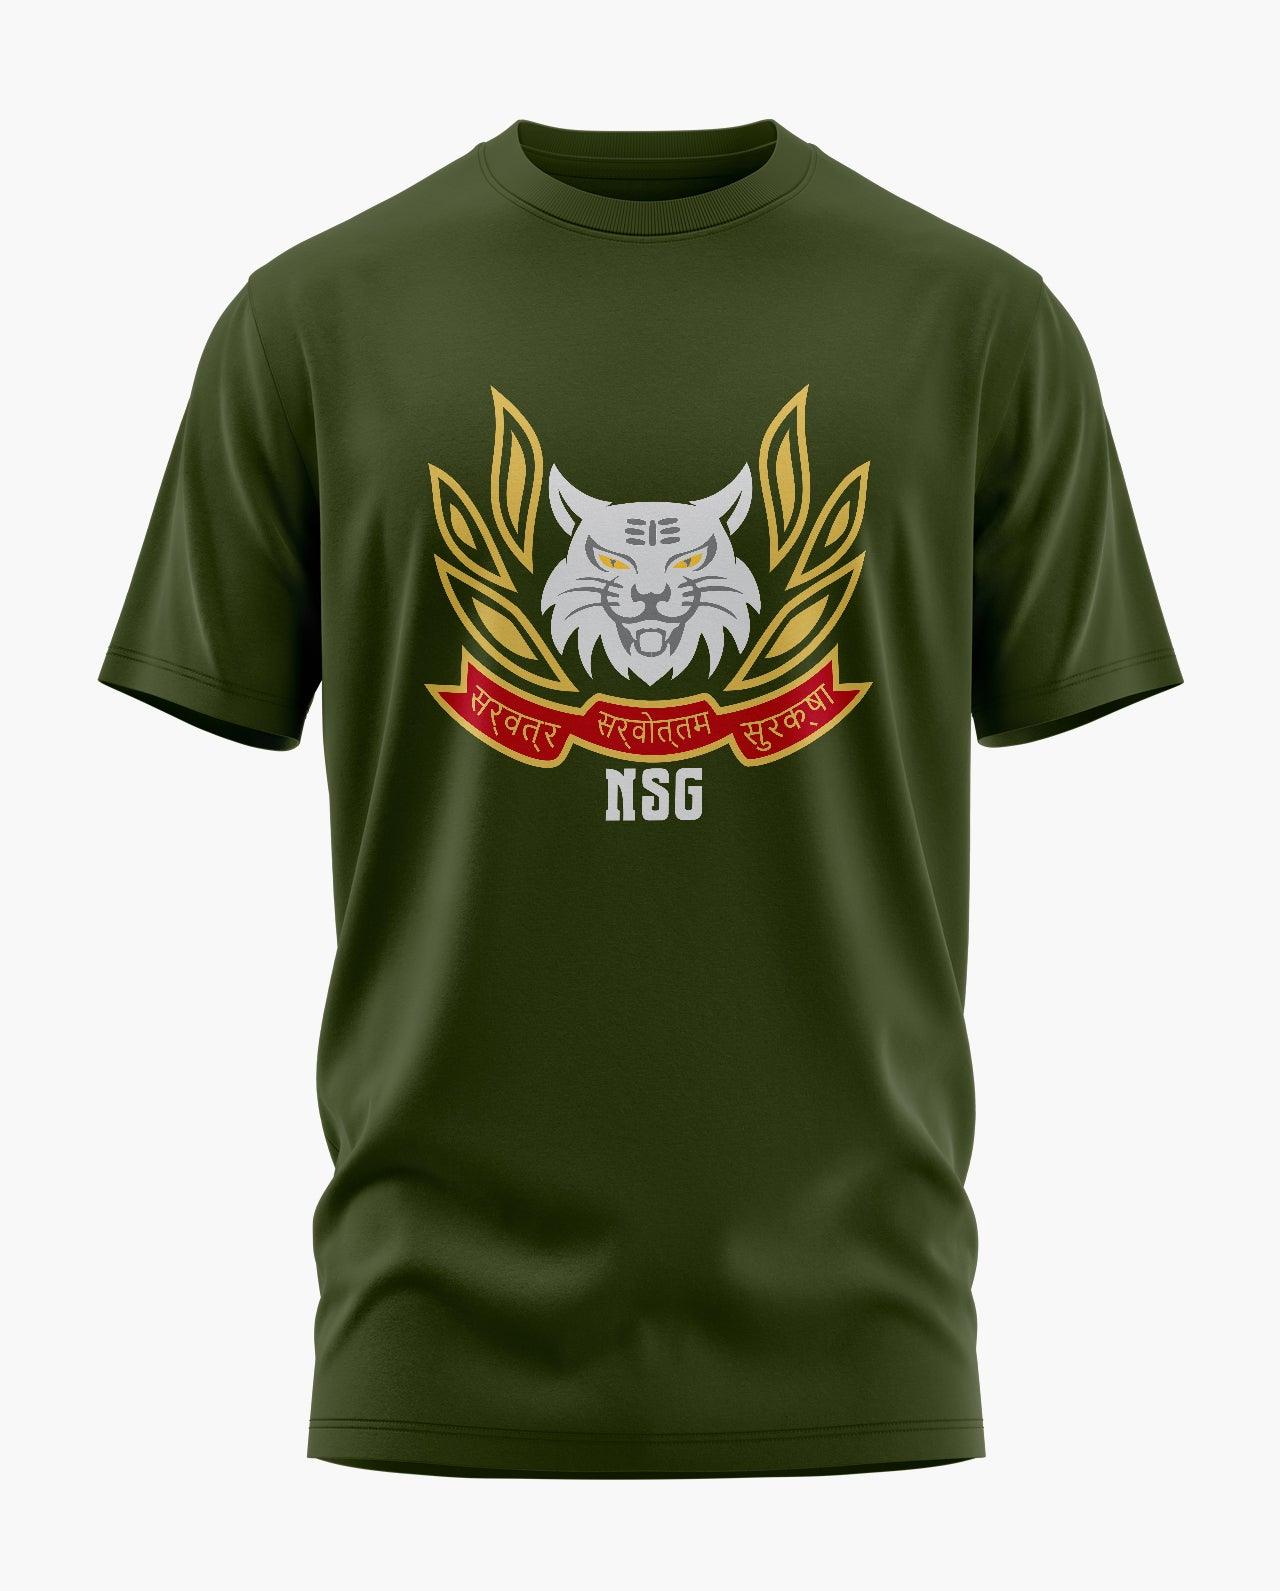 NSG Commando T-Shirt - Aero Armour